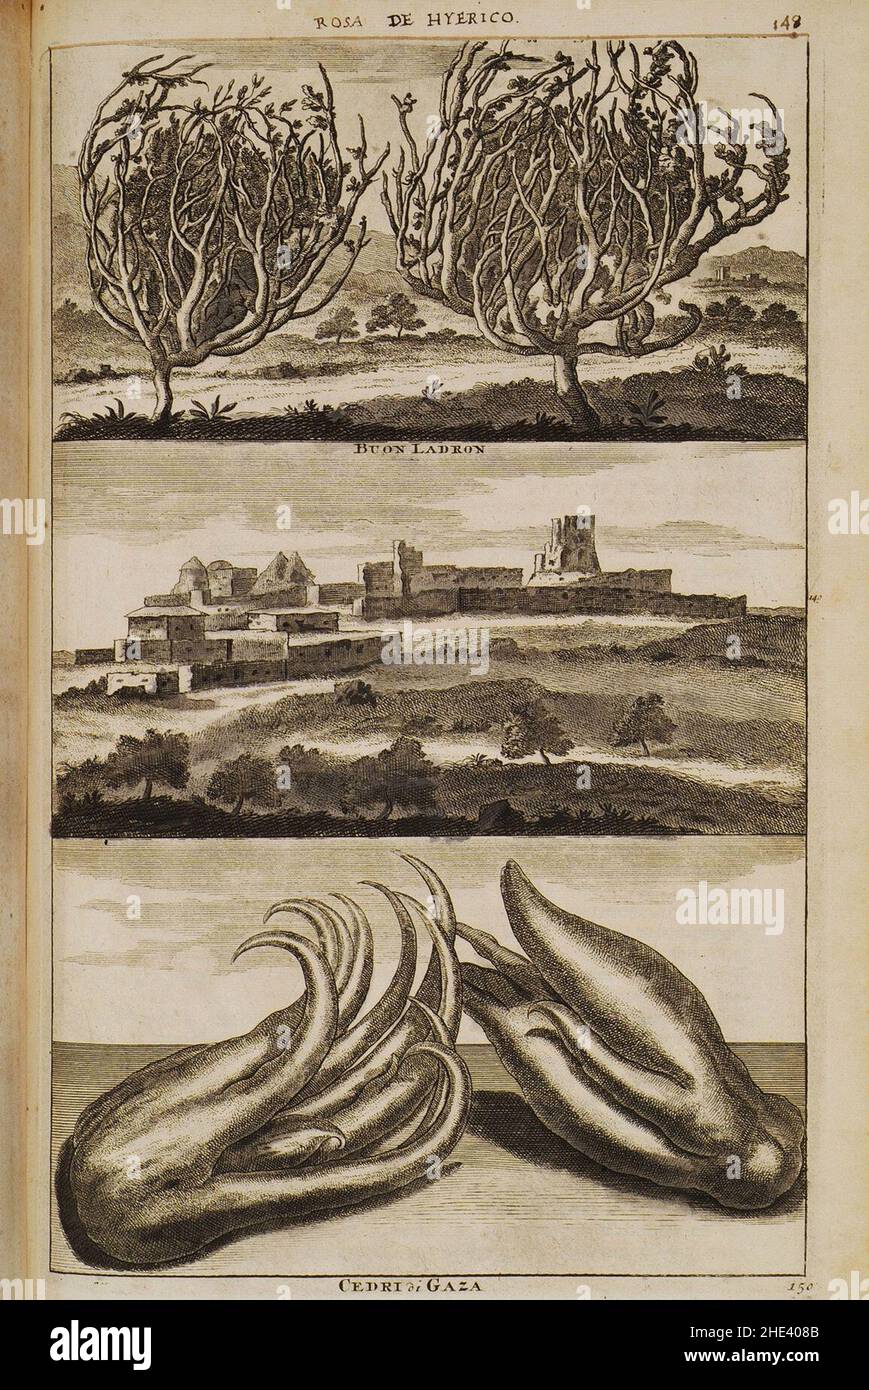 Rosa de Hyerico (148), Buon Ladron (149), Cedri di Gaza (150) - Bruyn Cornelis De - 1714. Stock Photo